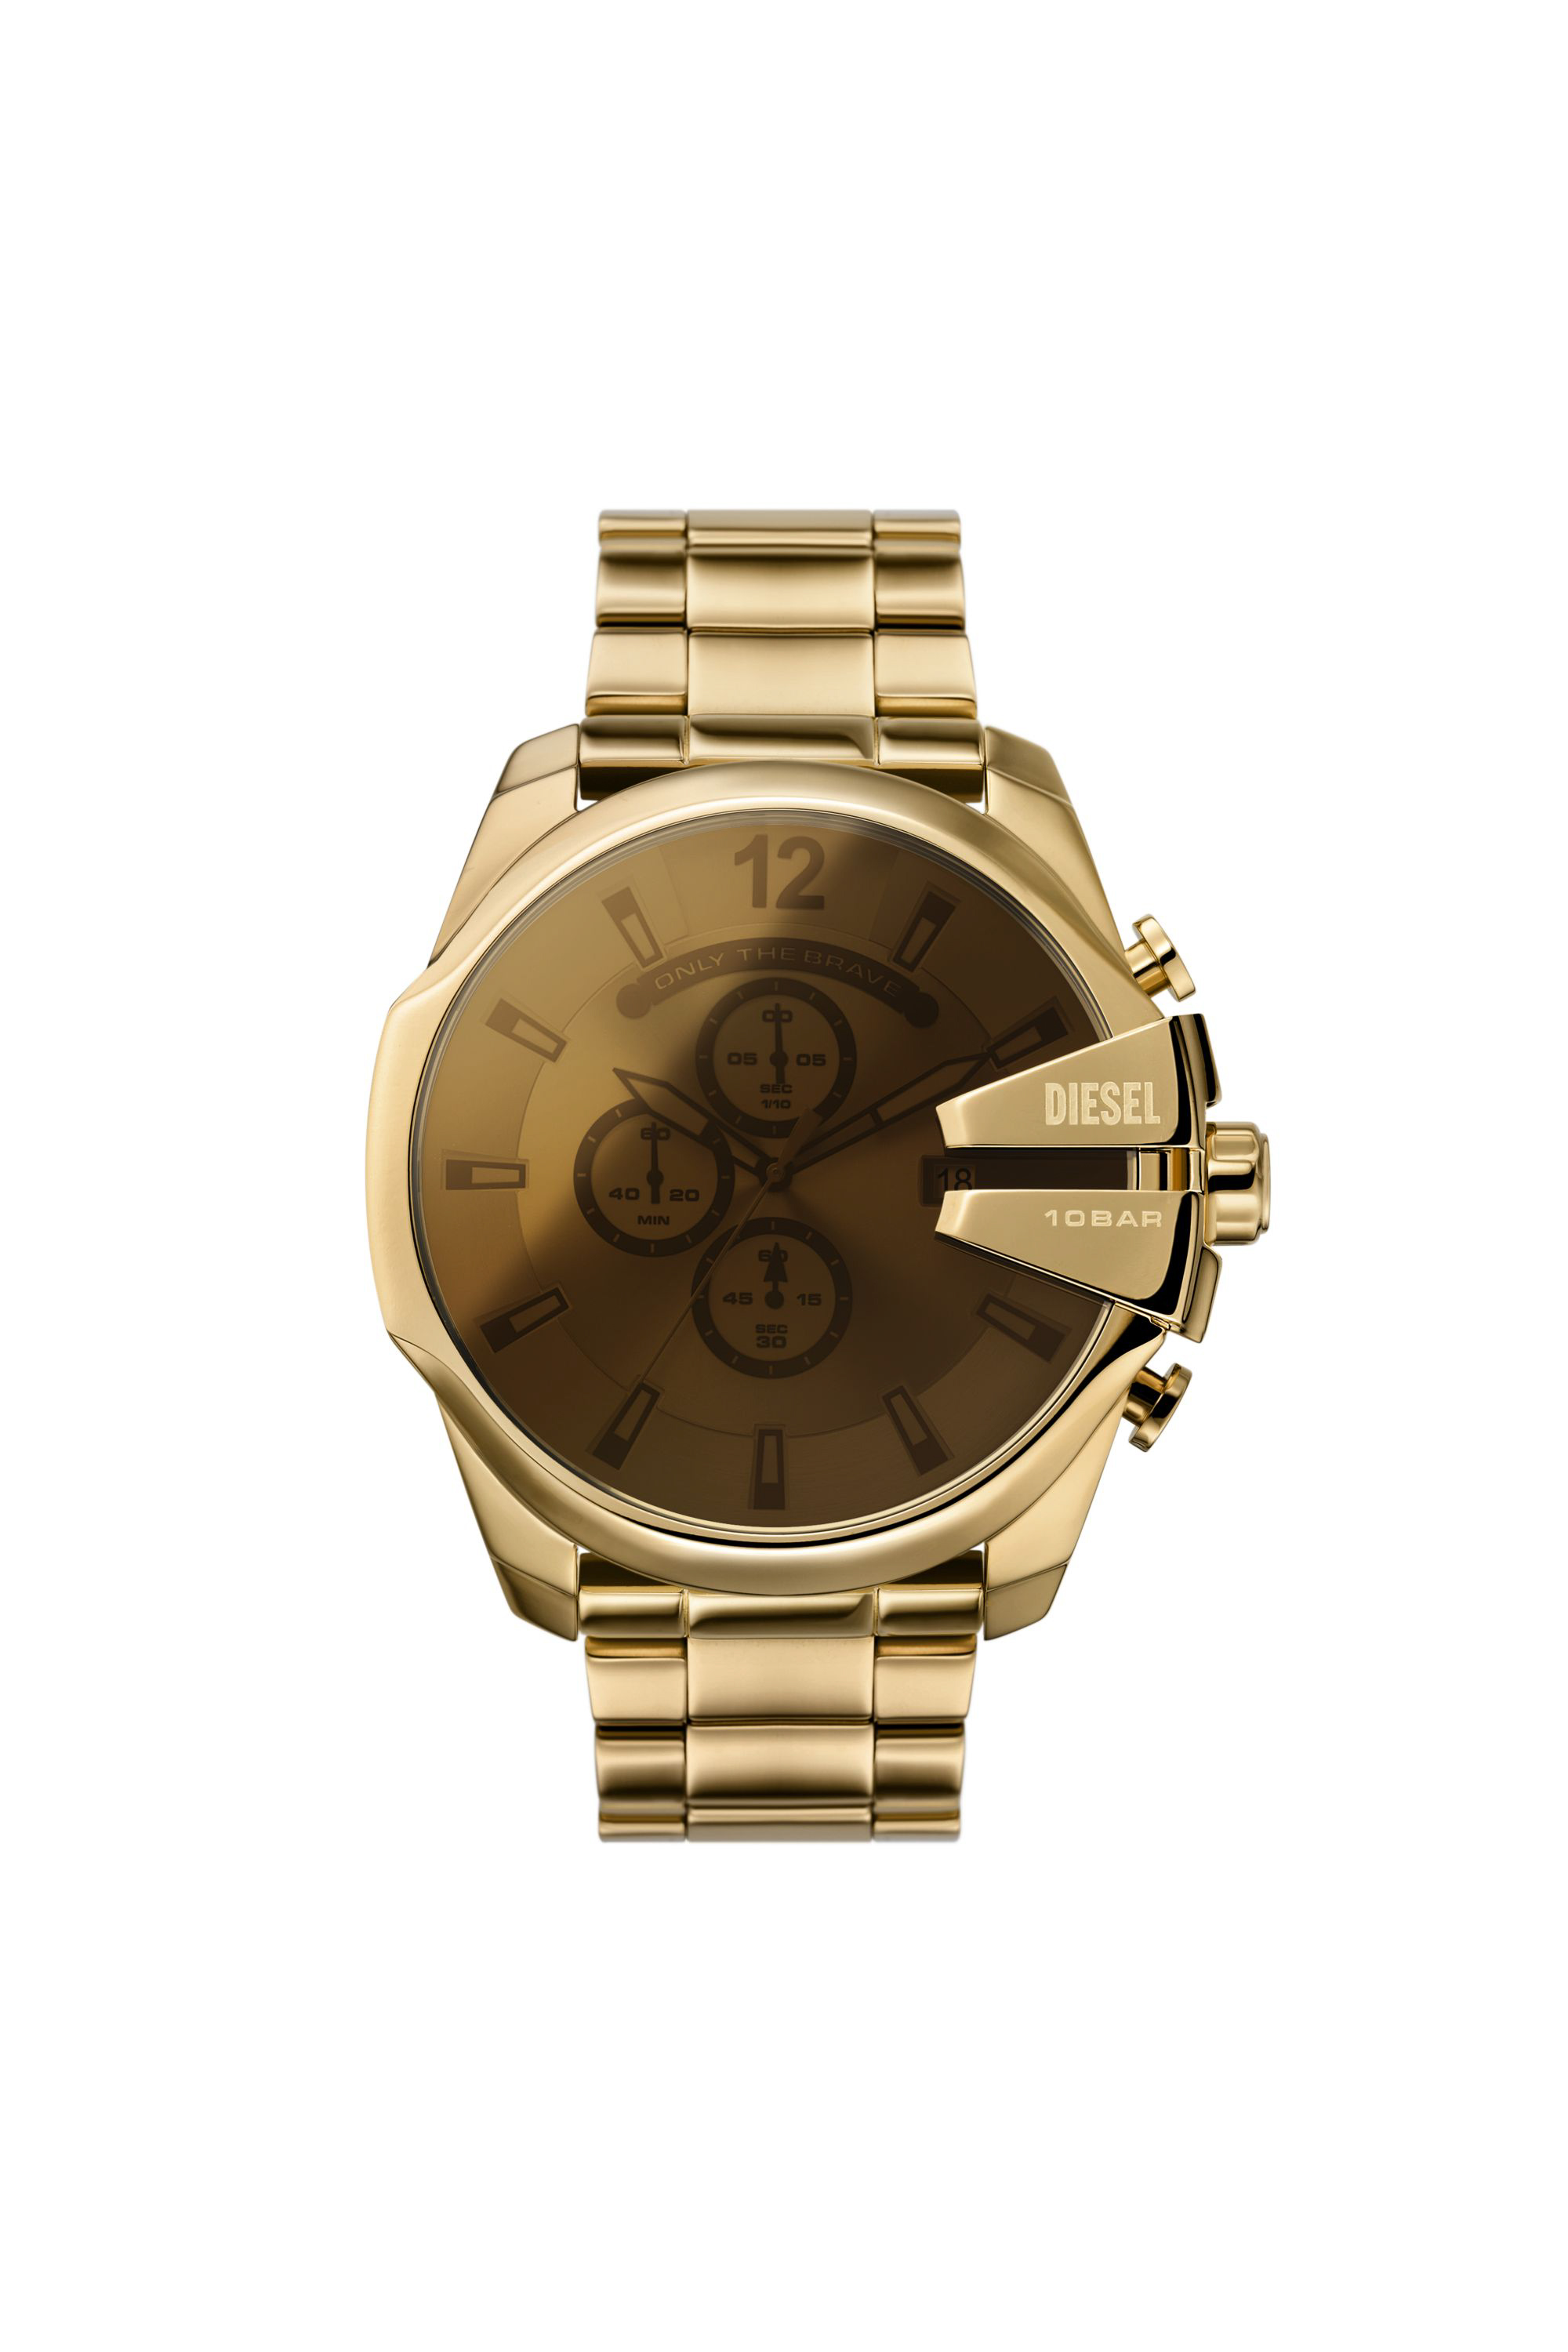 Diesel - Reloj Mega Chief de acero inoxidable en tono dorado con cronógrafo - Relojes - Hombre - Dorado